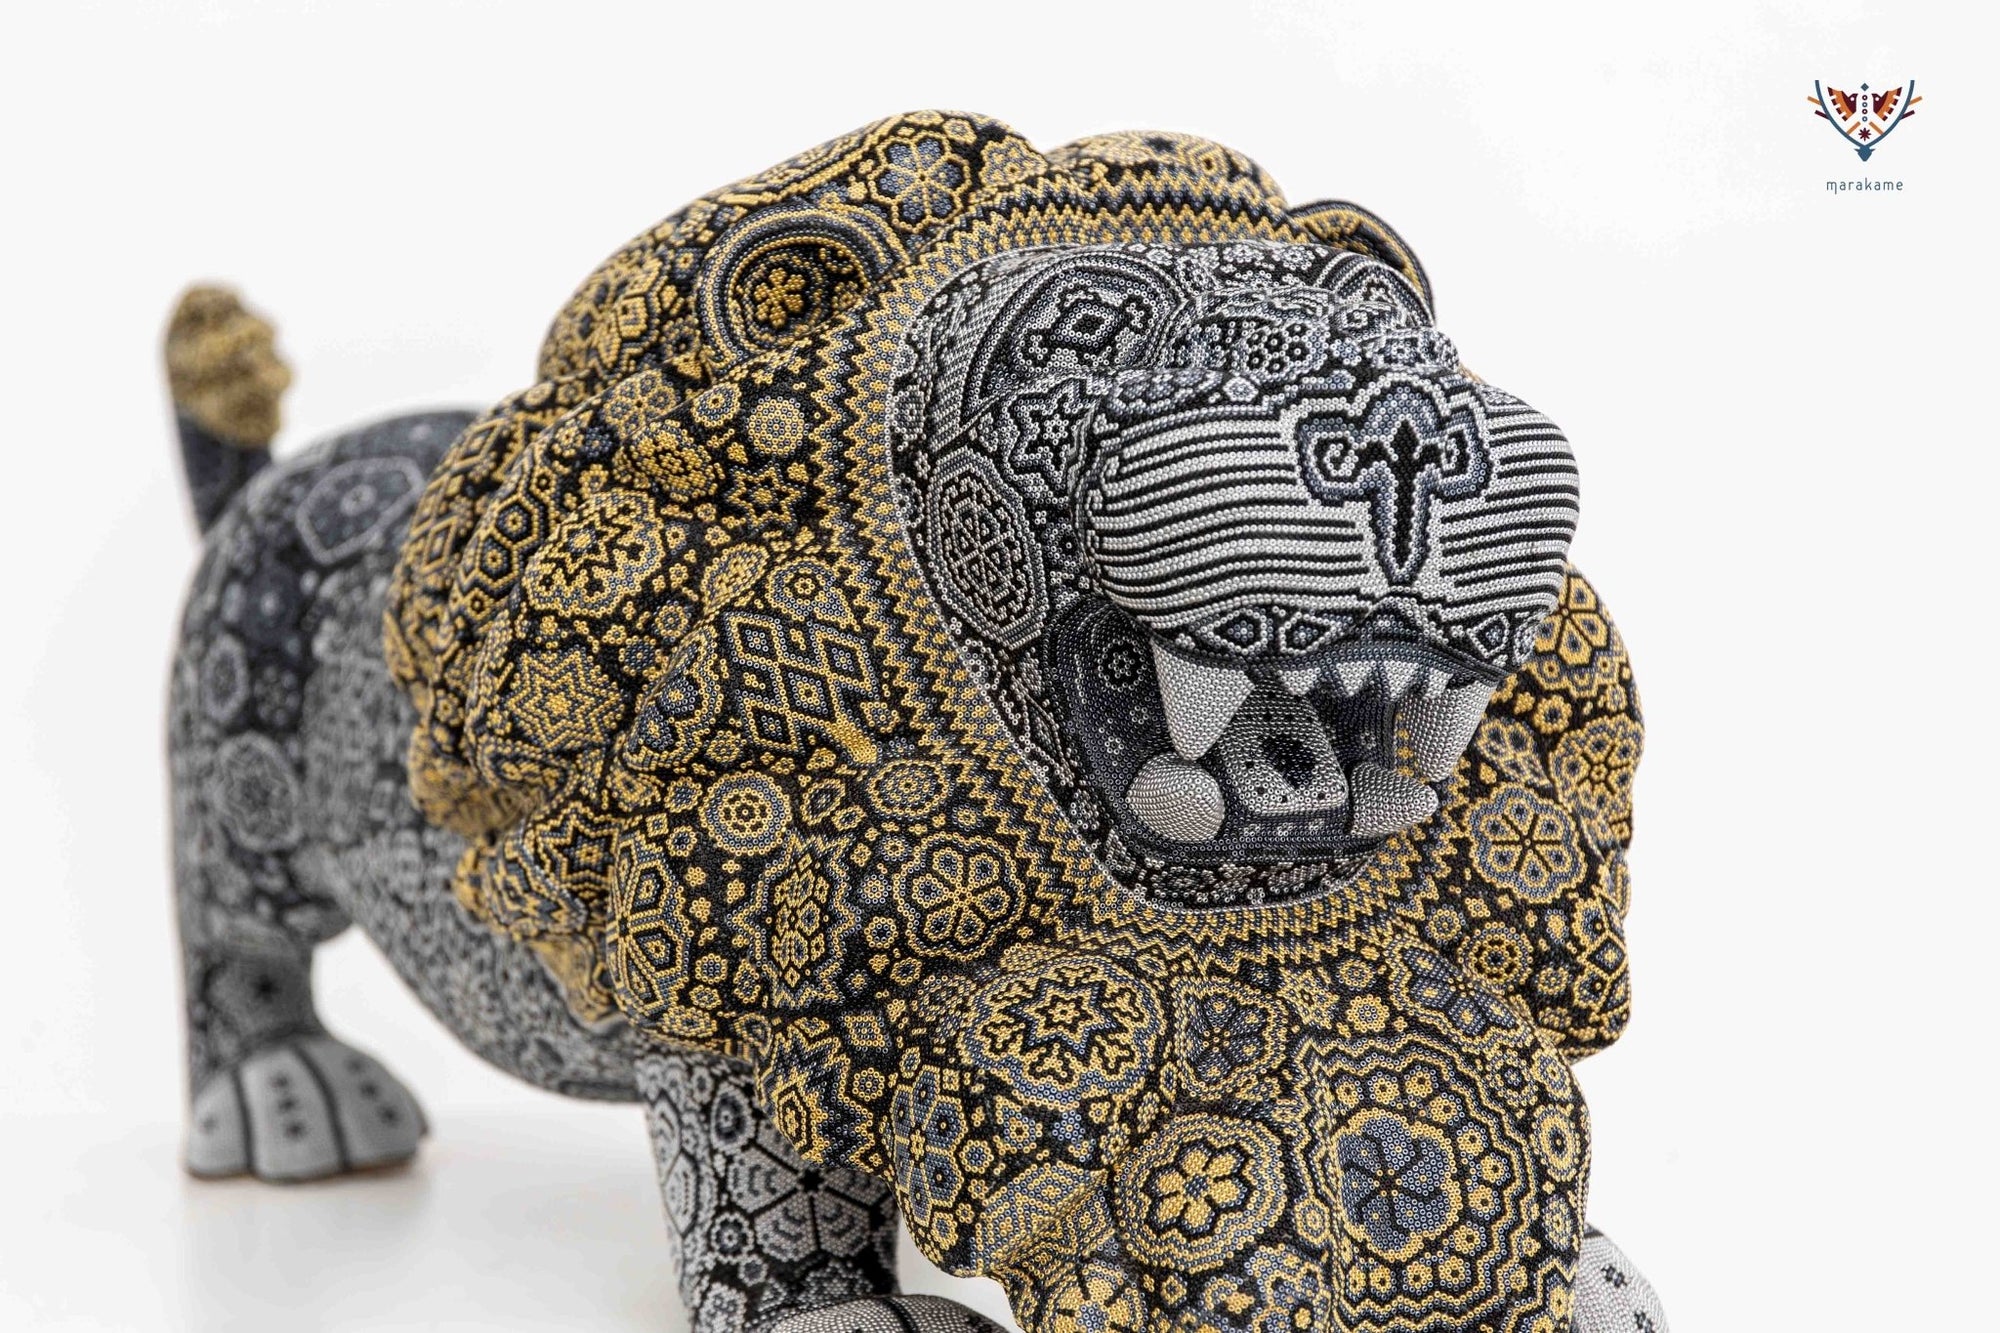 彫刻ウイチョル族アート - 偉大なライオン - ウイチョル族アート - マラカメ